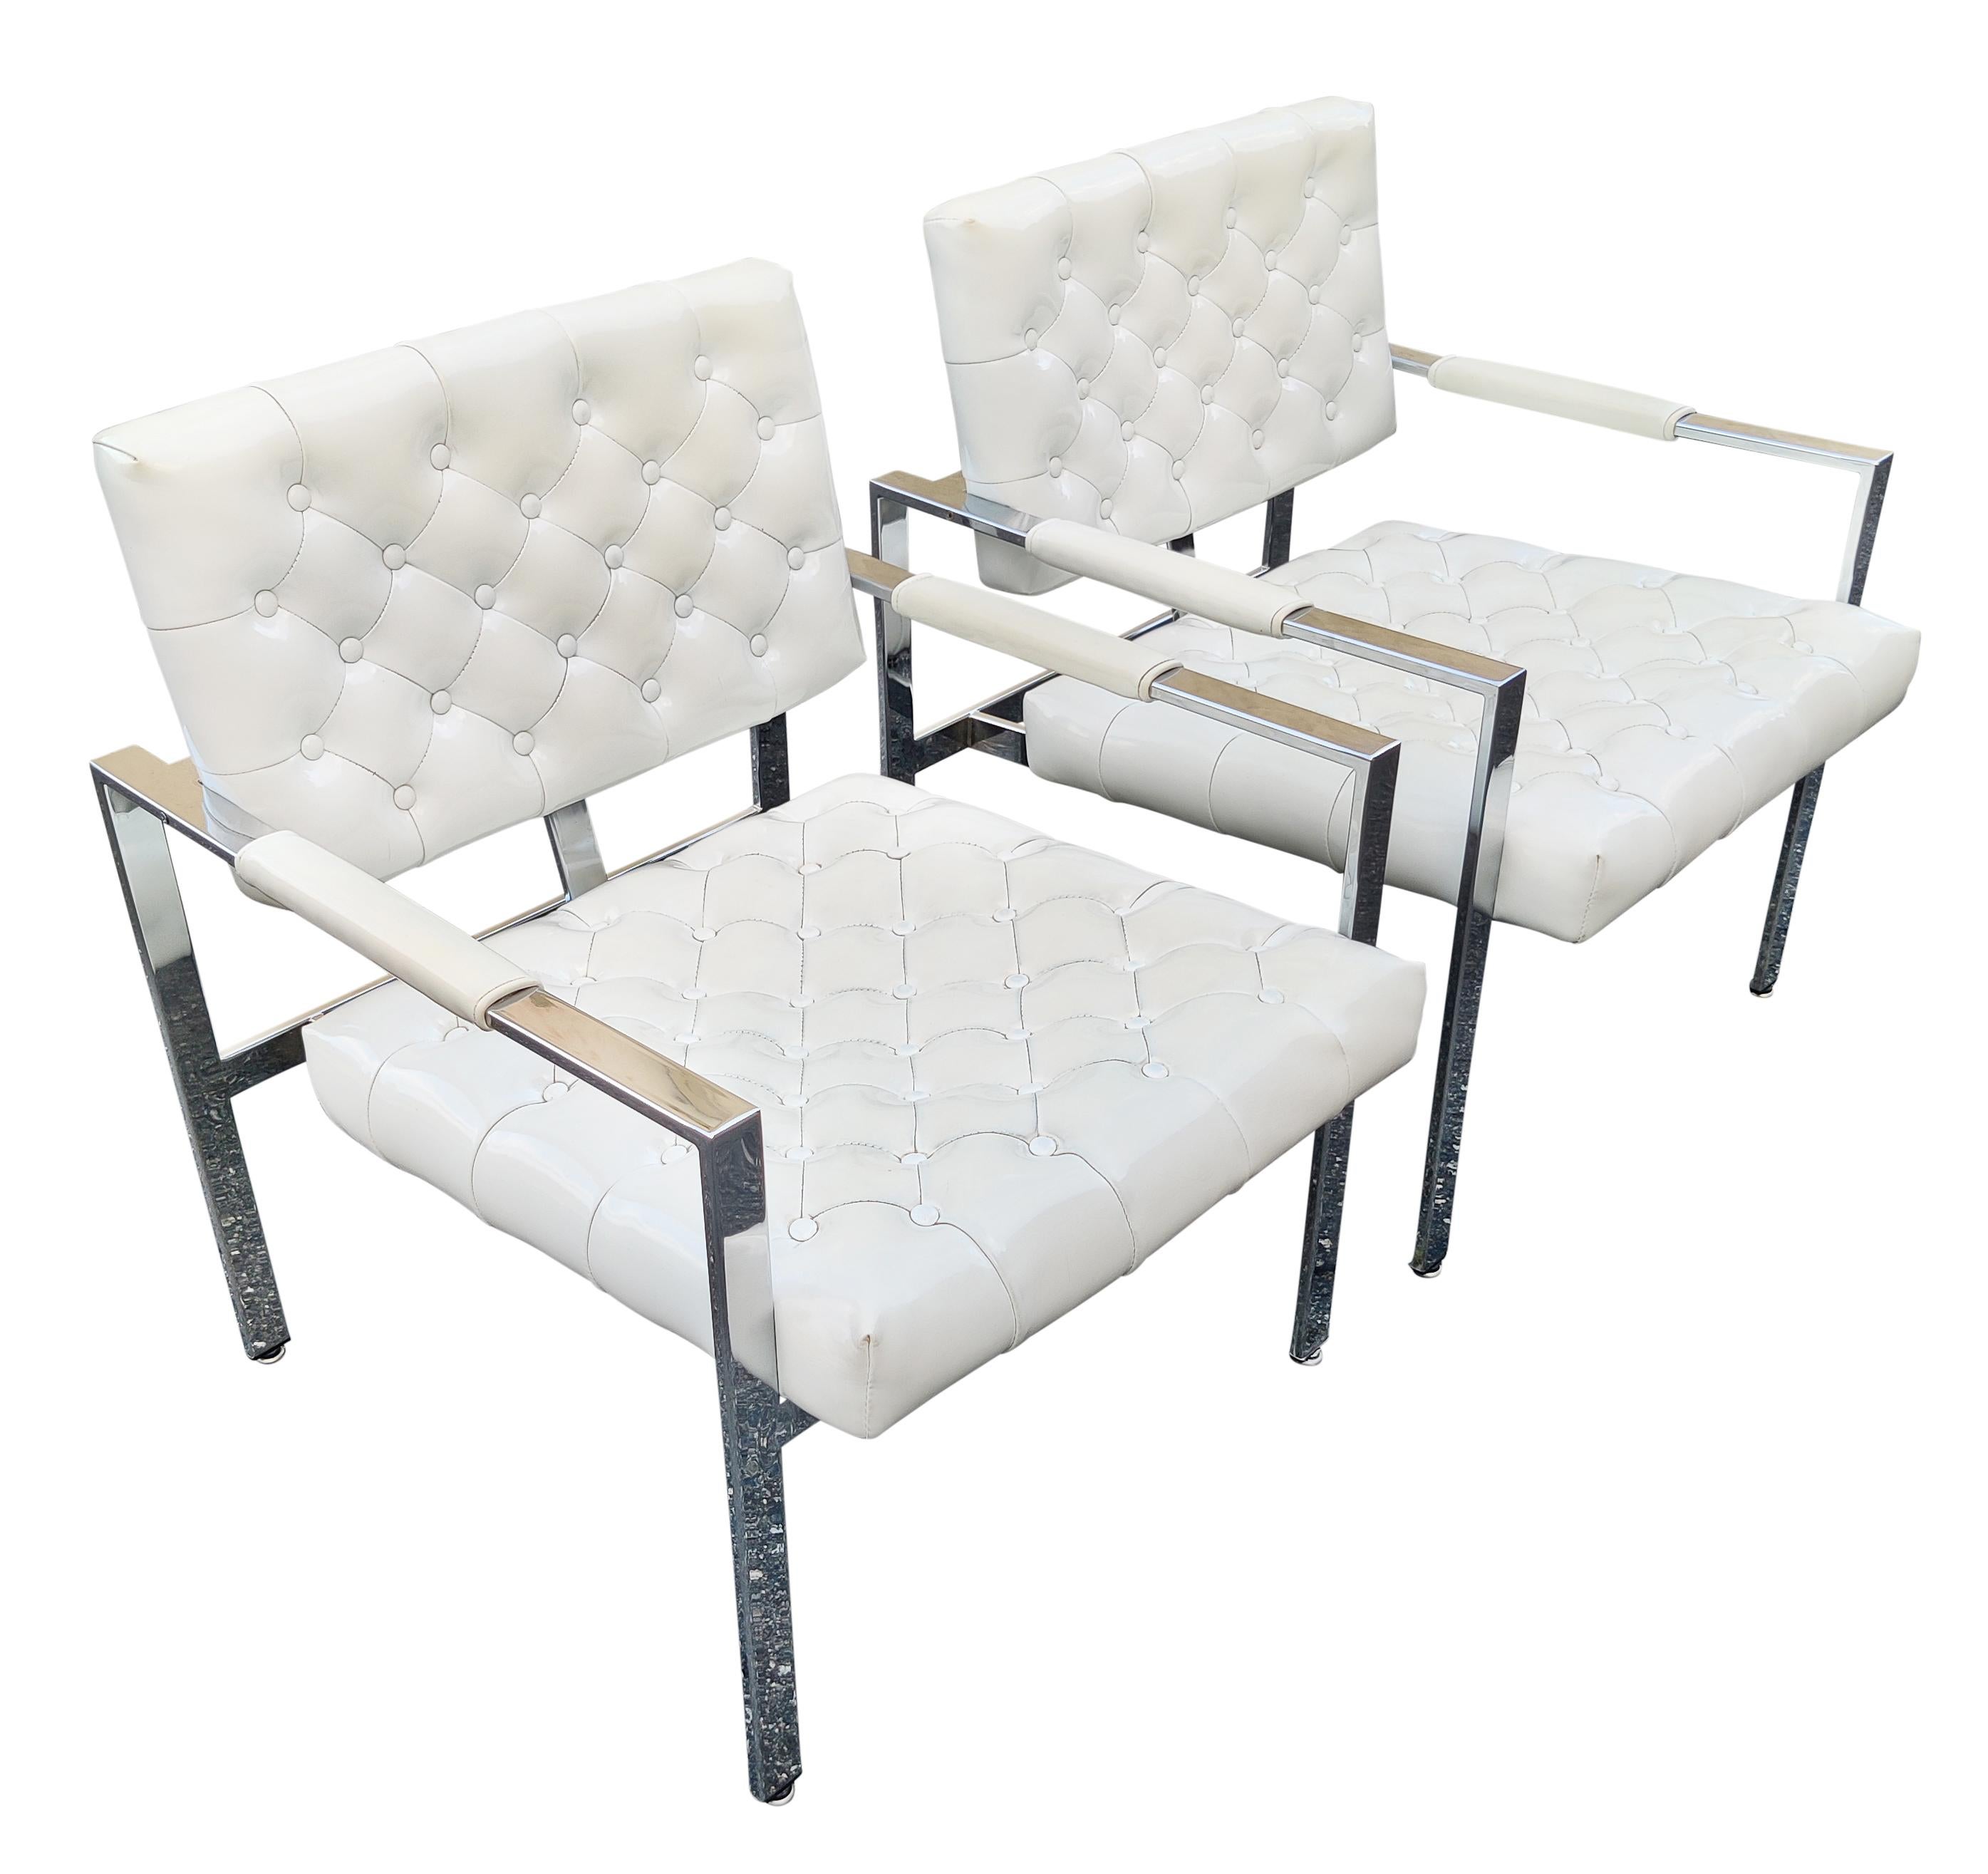 Une paire de fauteuils ou de chaises longues très propre et originale conçue par Milo Baughman et fabriquée par Thayer Coggin ! Cette paire de chaises signée a des cadres chromés super propres et brillants. La tapisserie d'origine en vinyle brillant